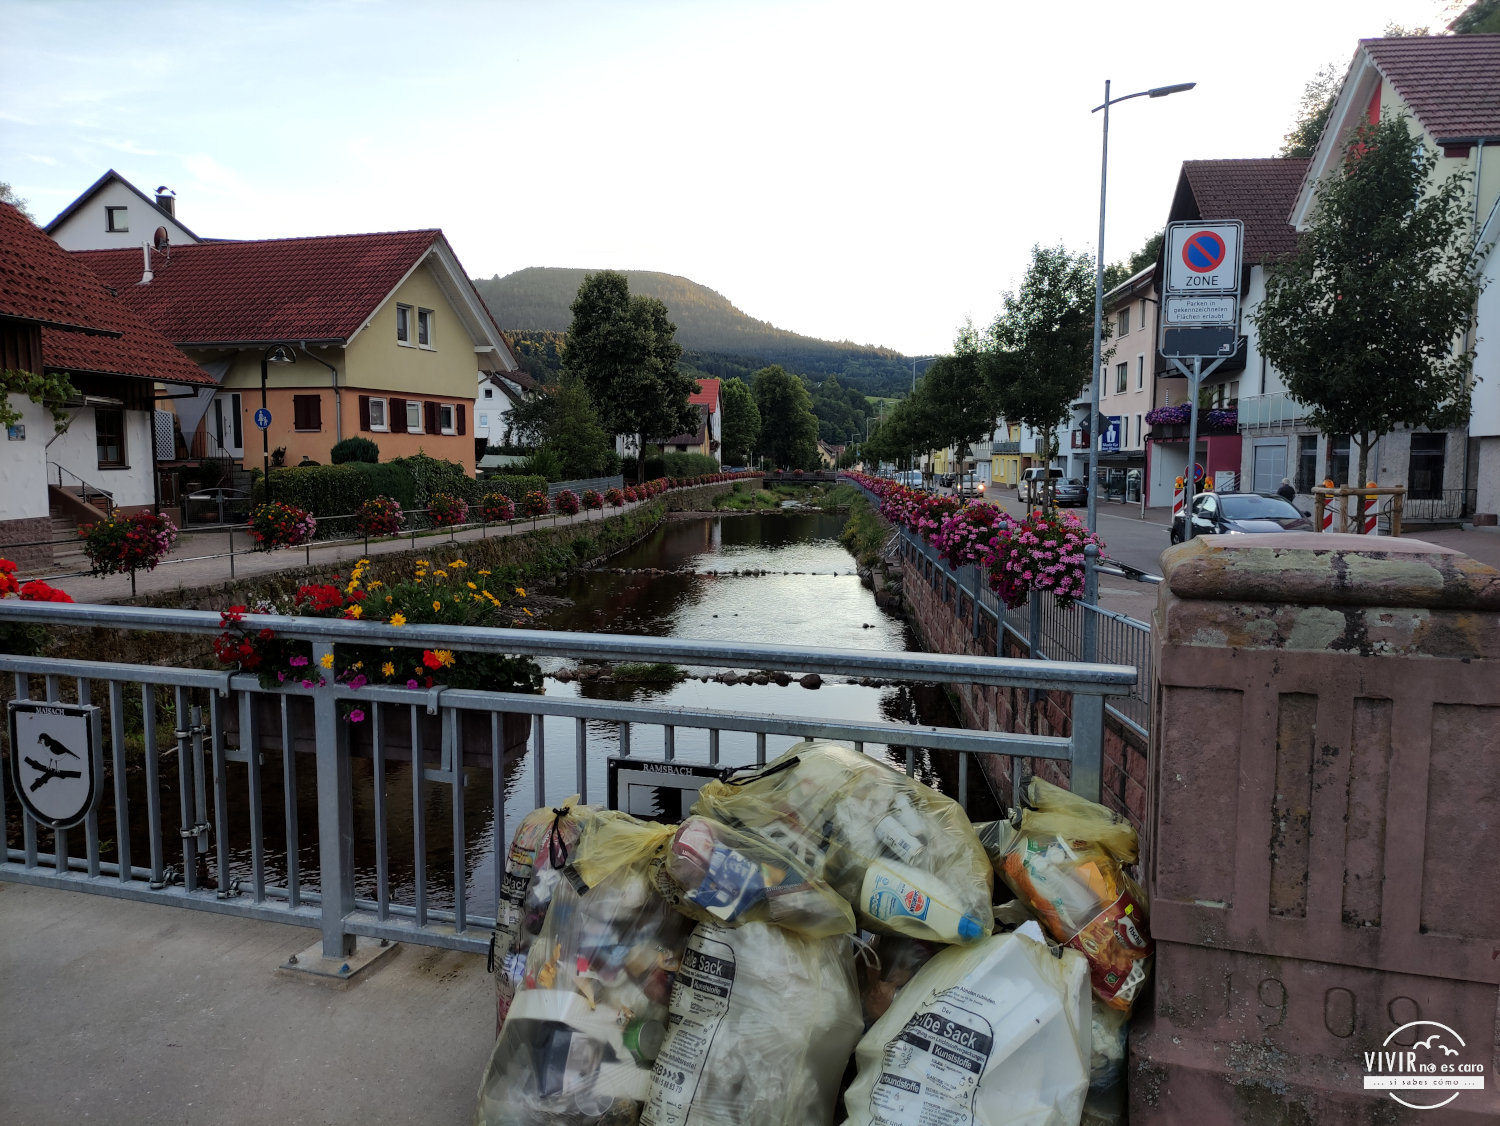 Basura plásticos en la calle en Alemania Oppenau